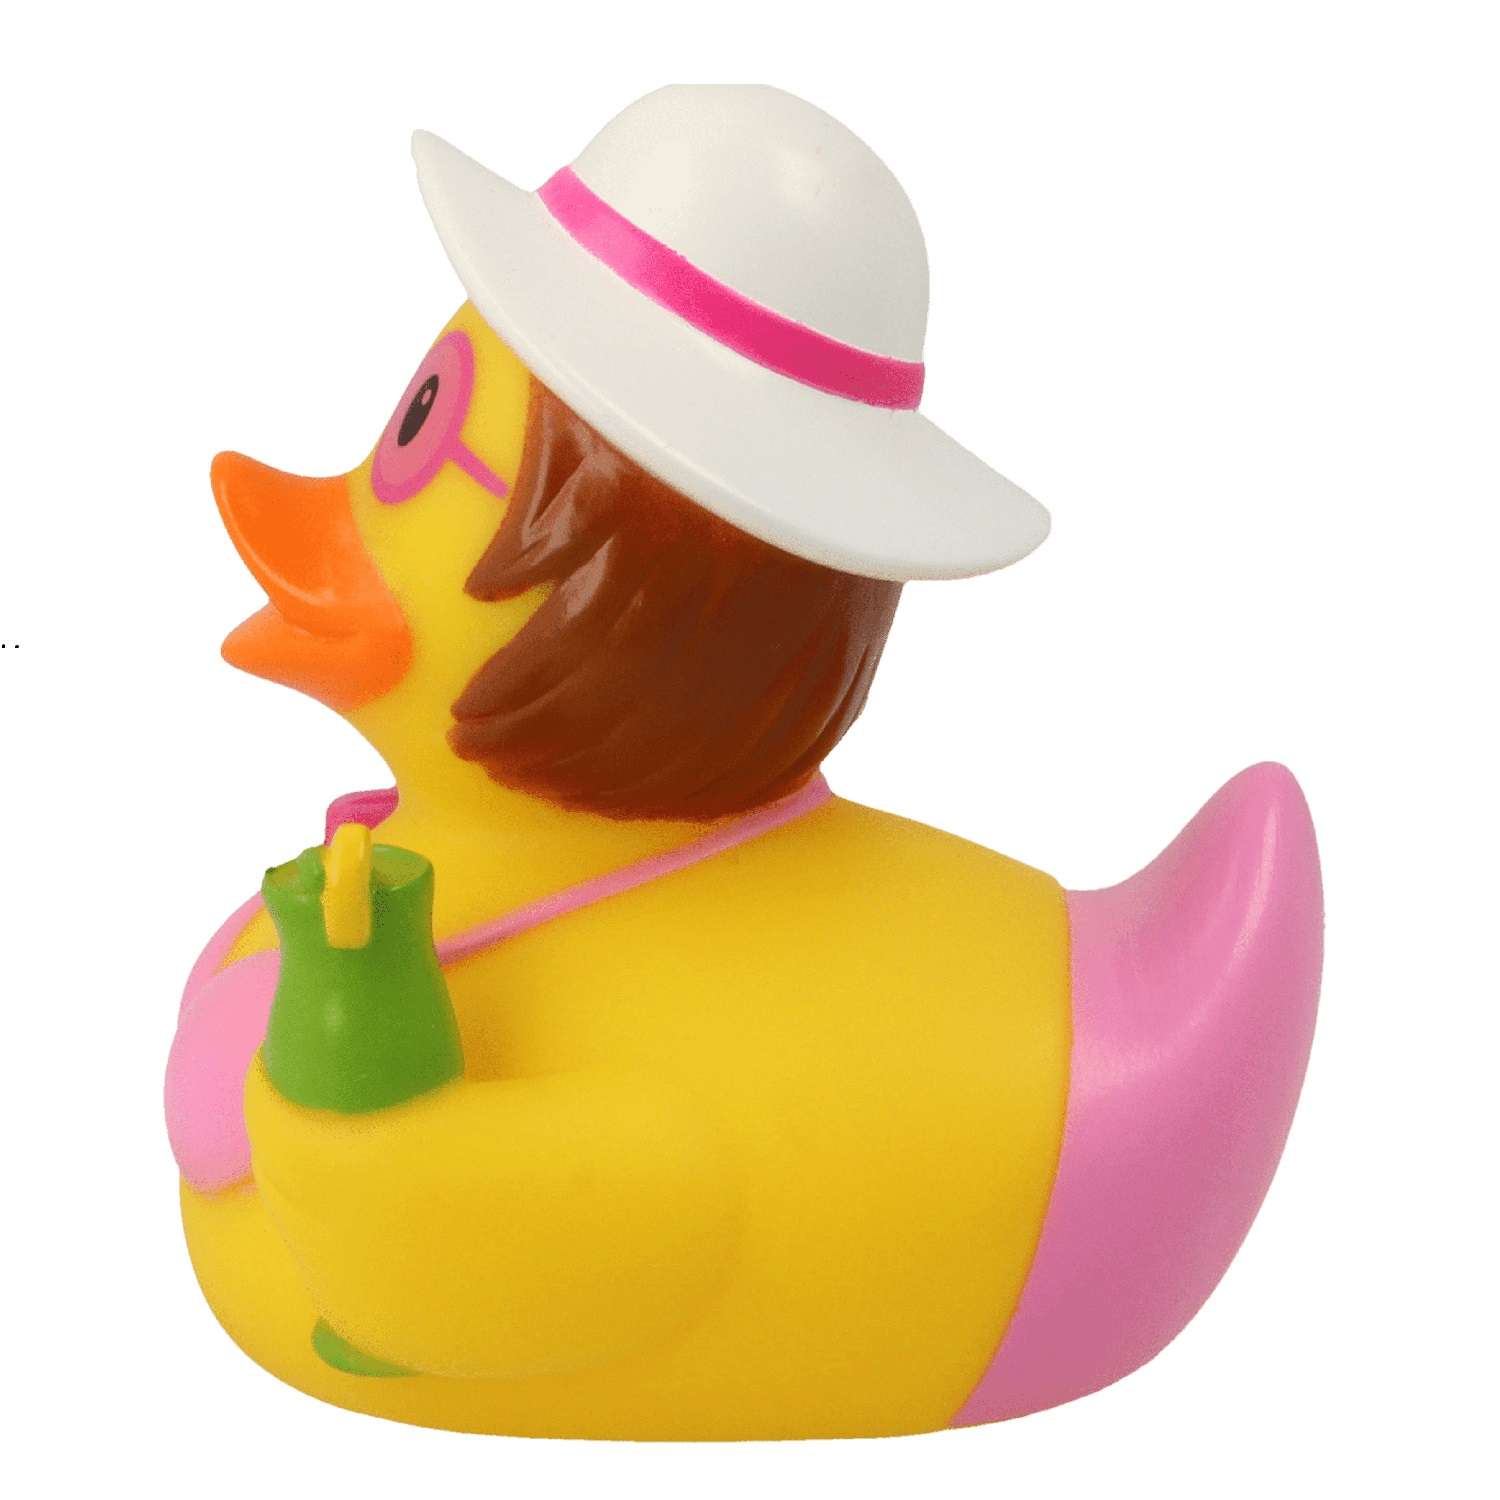 Игрушка Funny ducks для ванной Пляжница уточка 1259 - фото 2